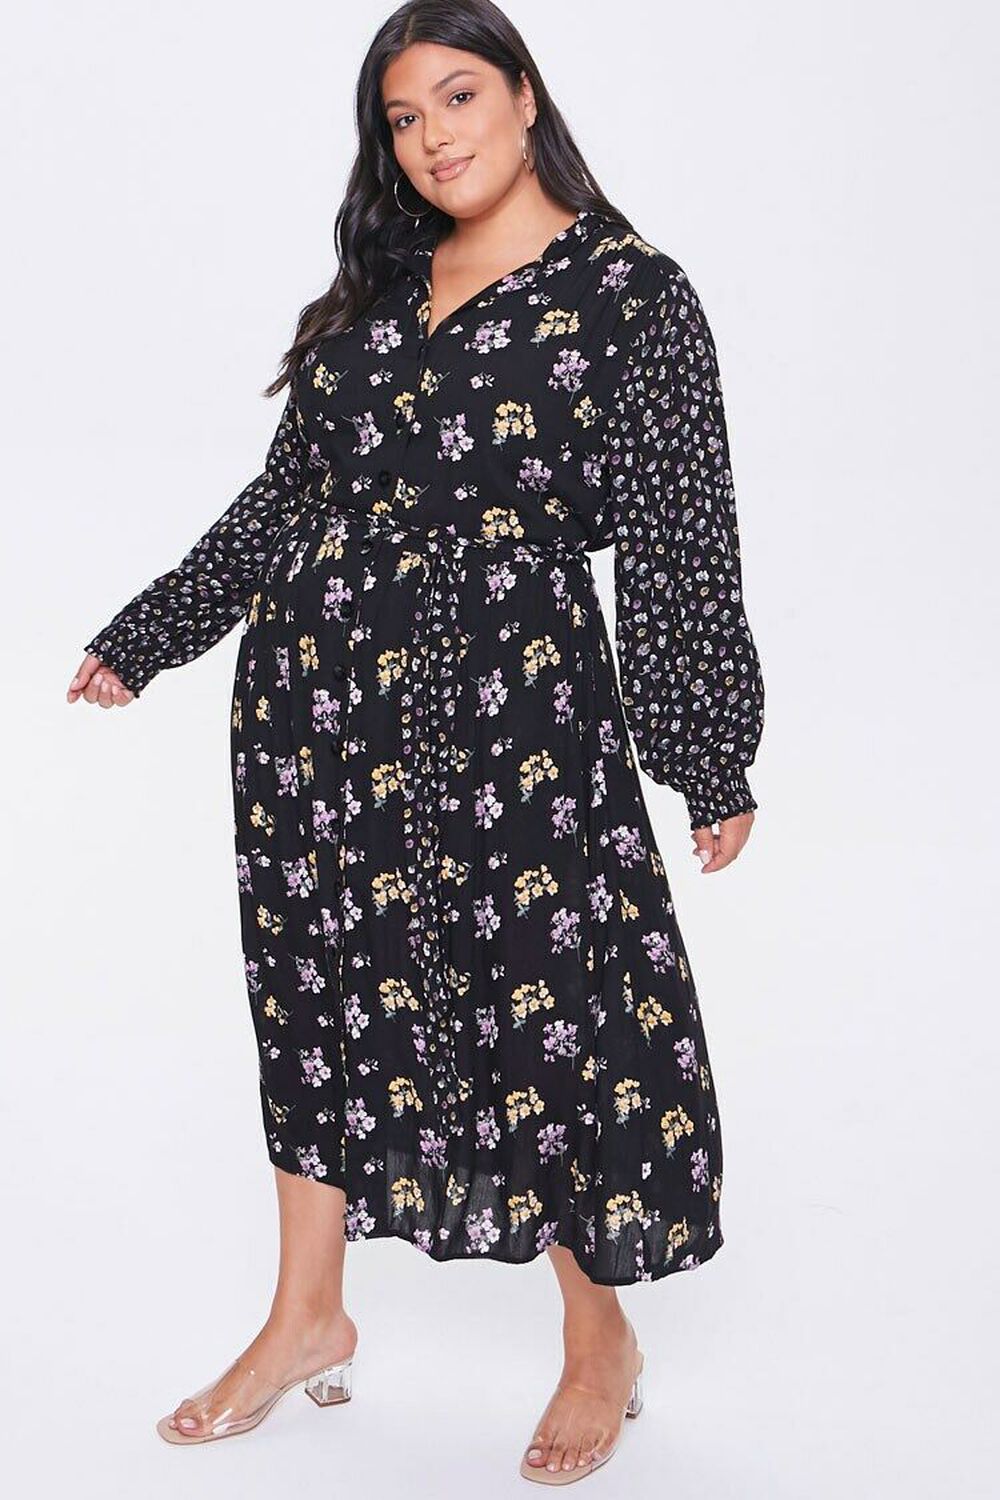 BLACK/MULTI Plus Size Floral Print Buttoned Dress, image 1